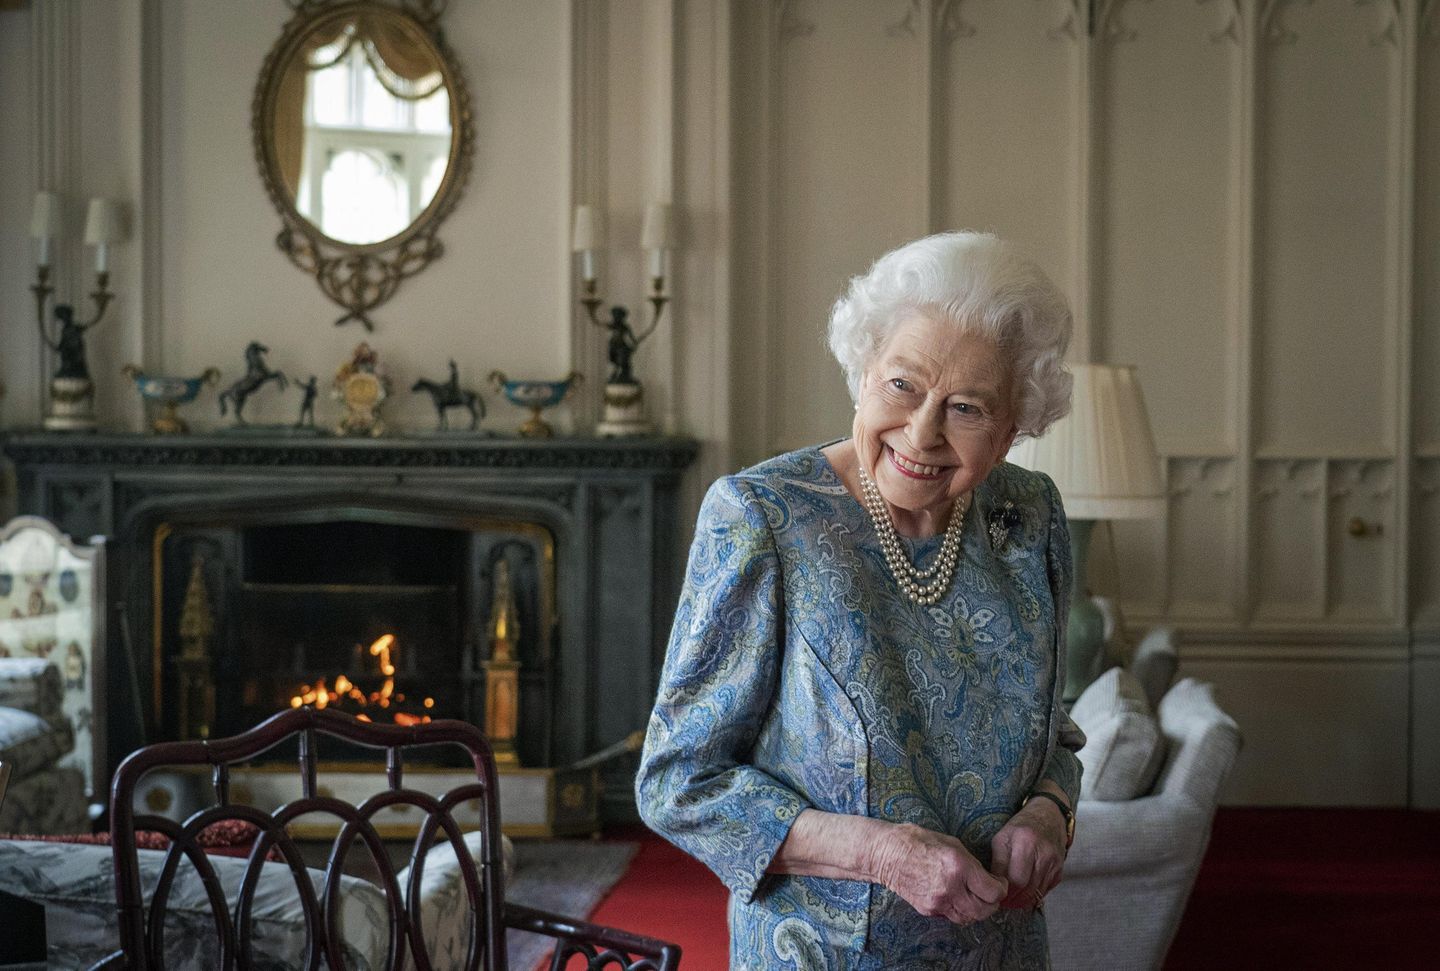 İngiltere, Kraliçe II. Elizabeth'in 70 yıllık saltanatını kutlamak için günlerce bash yapacak